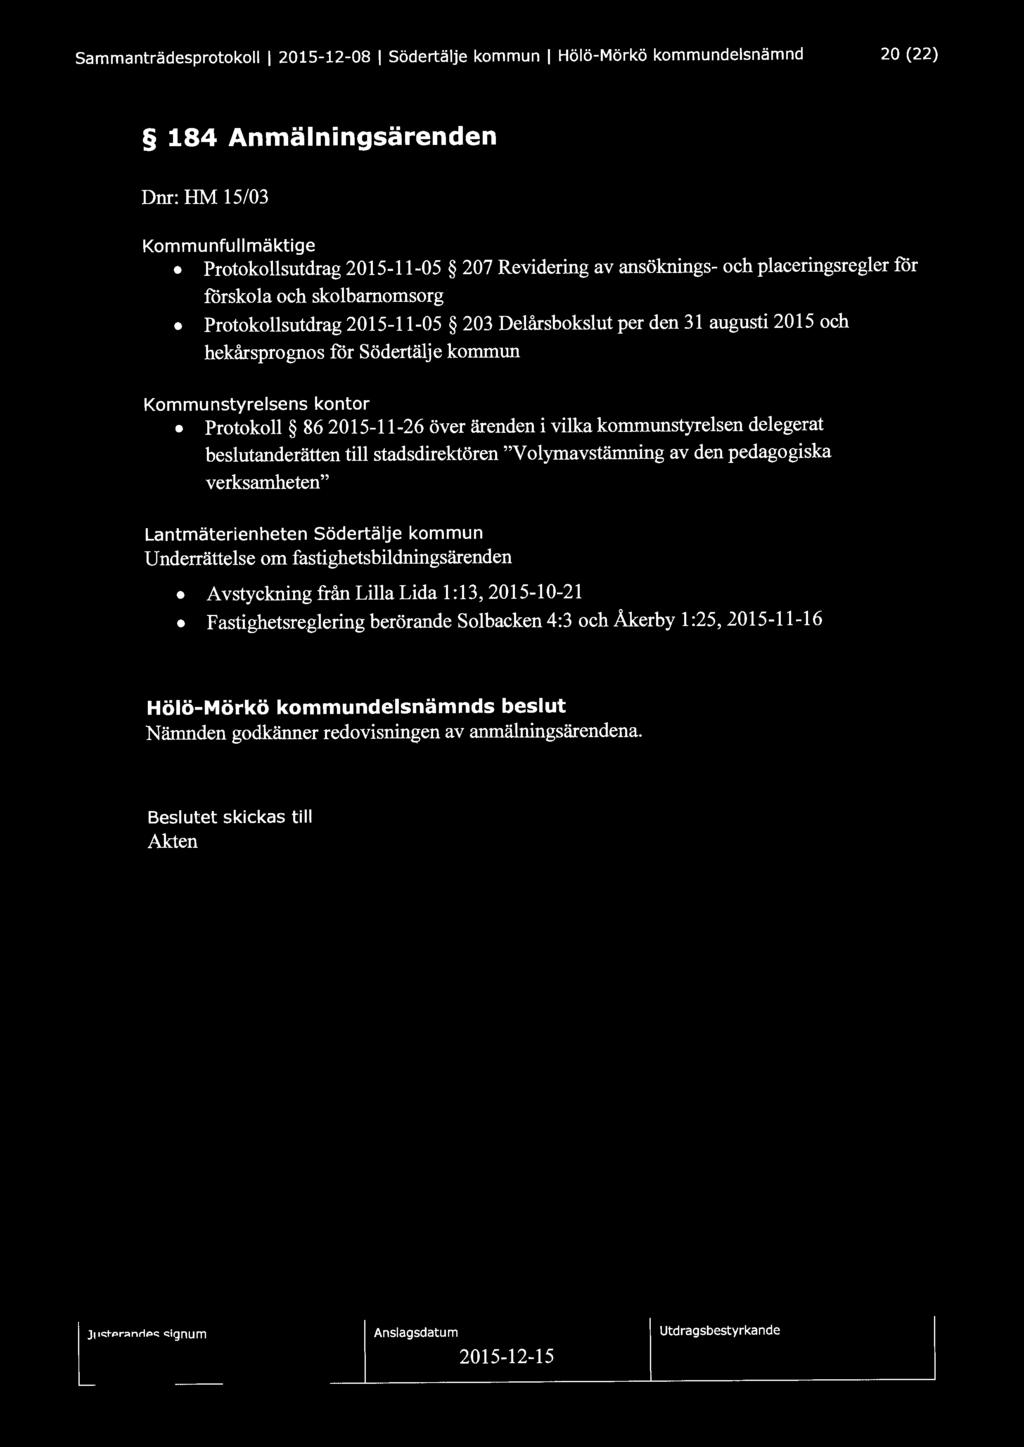 Sammanträdesprotokoll l 2015-12-08 l Södertälje kommun l Hölö-Mörkö kommundelsnämnd 20 (22) 184 Anmälningsärenden Dnr: HM 15/03 Kommunfullmäktige Protokollsutdrag 2015-11-05 207 Revidering av